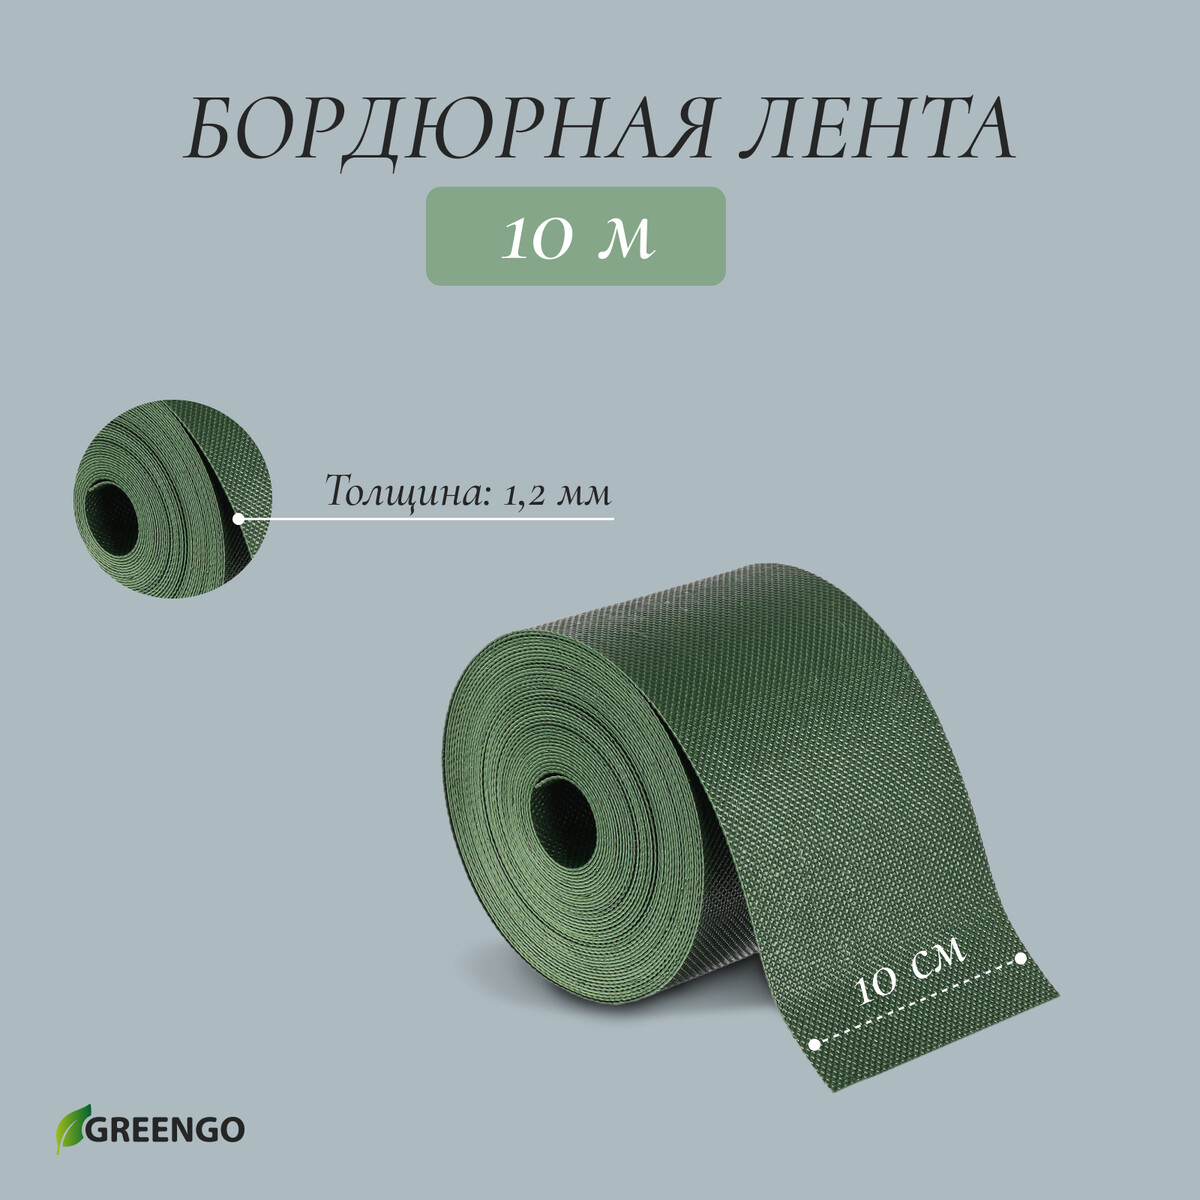 Лента бордюрная, 0.1 × 10 м, толщина 1.2 мм, пластиковая, зеленая, greengo лента бордюрная 0 15 × 9 м толщина 0 6 мм пластиковая гофра зеленая greengo